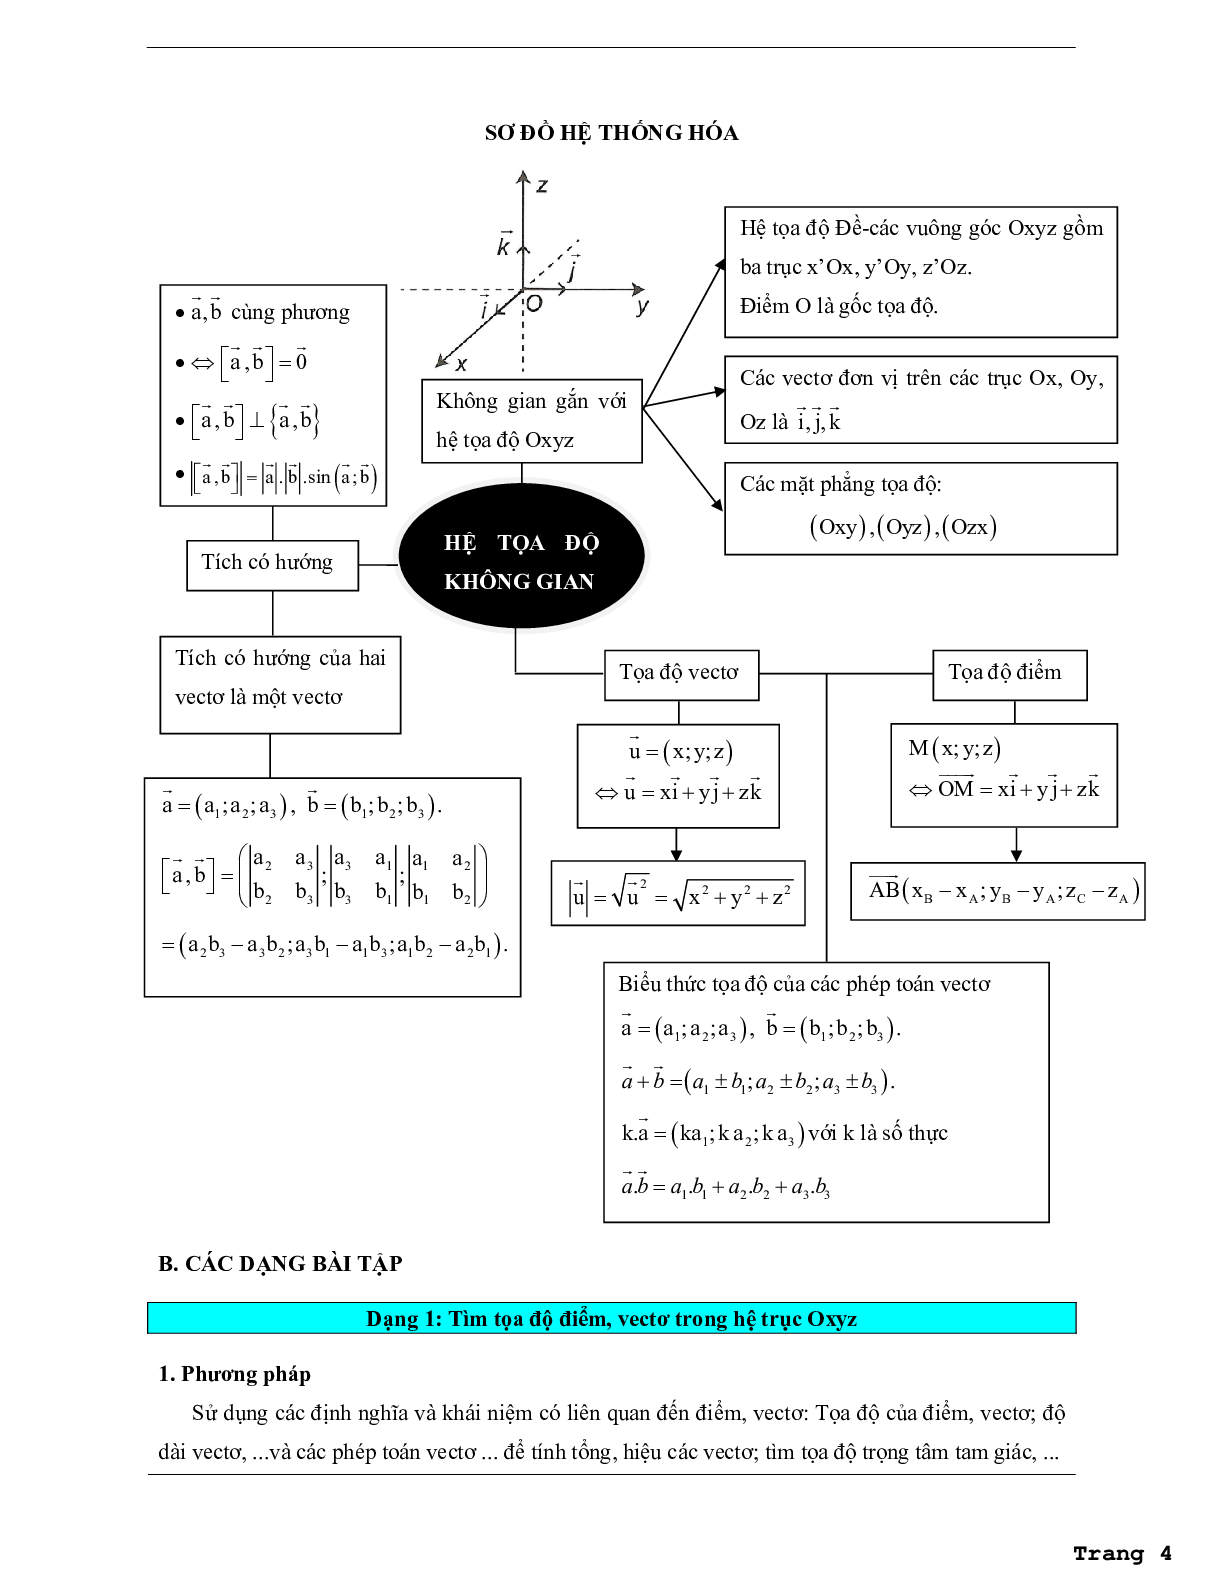 Các dạng bài tập vận dụng cao hệ tọa độ trong không gian (trang 4)